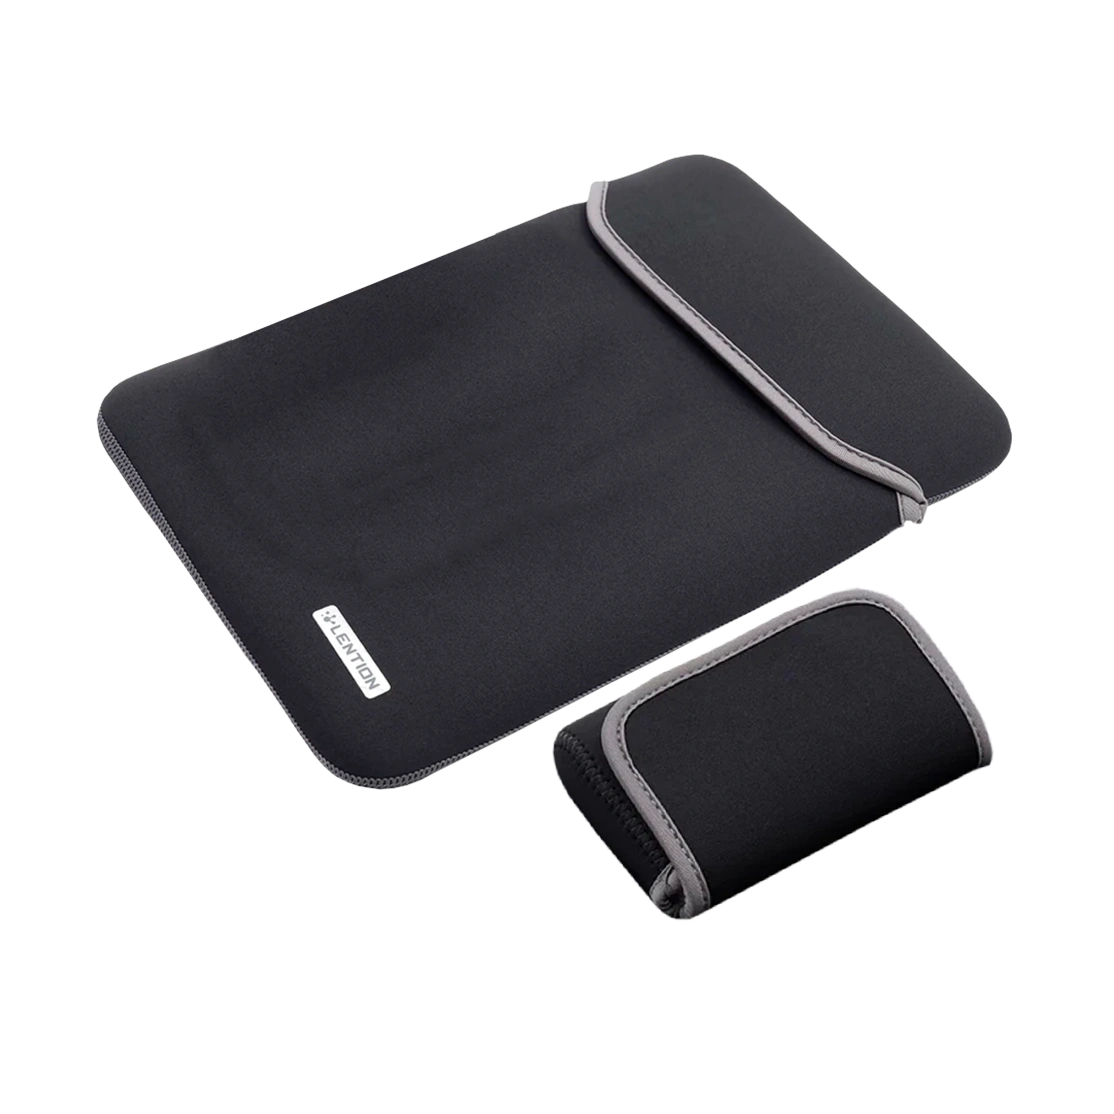 Lention Neoprene Sleeve Case for Macbook 12-inch PCB-B360